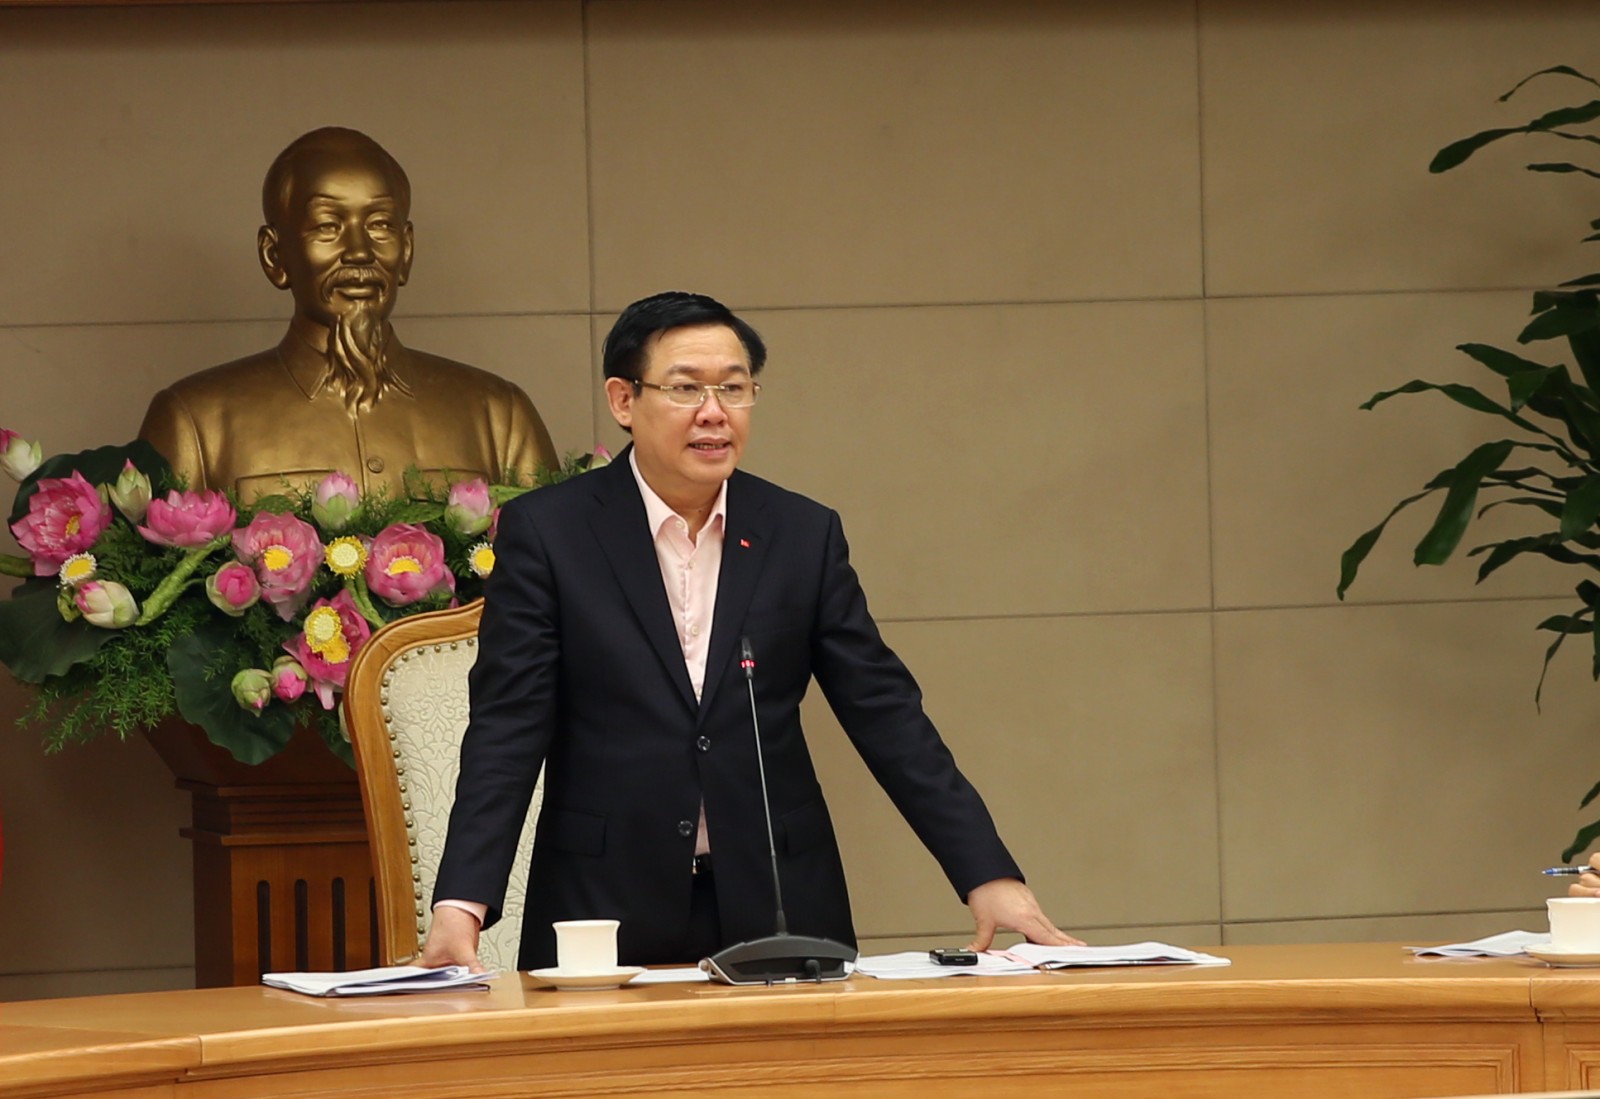 Phó Thủ tướng Vương Đình Huệ phát biểu tại cuộc họp - Ảnh: VGP/Thành Chung.